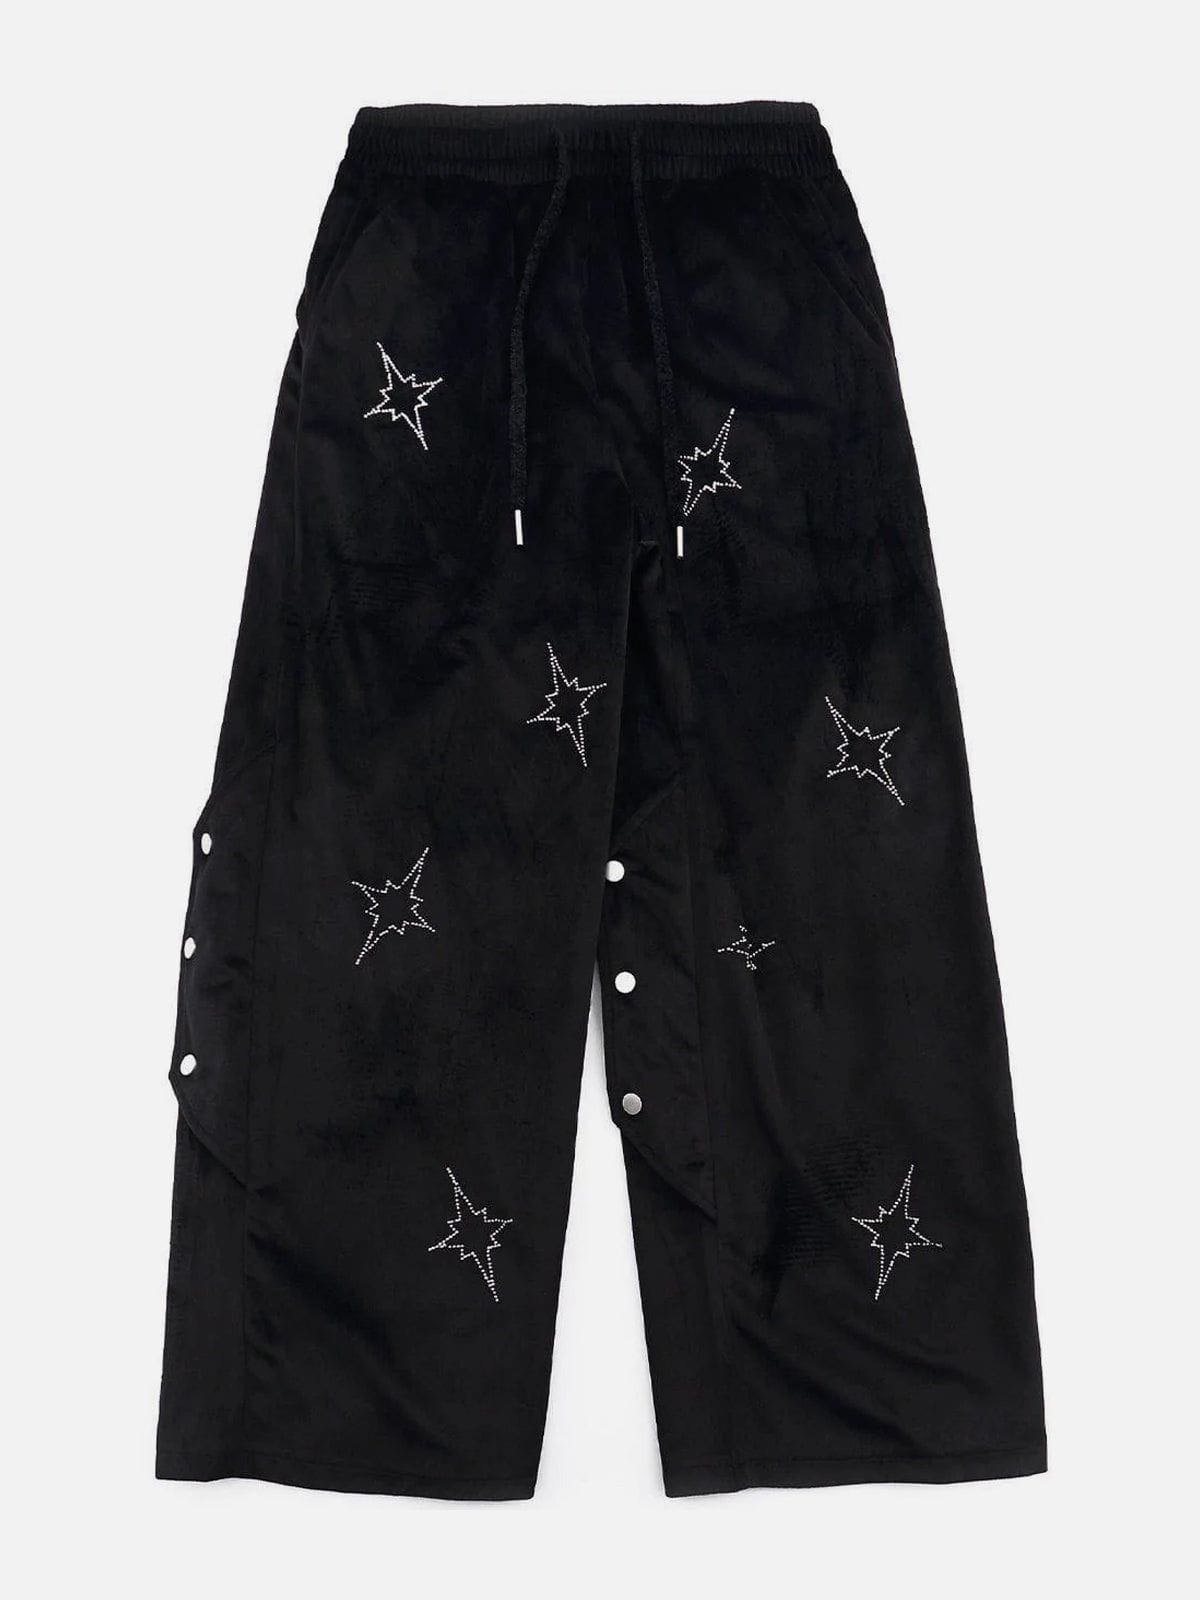 Eprezzy® - Star Sticker Diamond Pants Streetwear Fashion - eprezzy.com